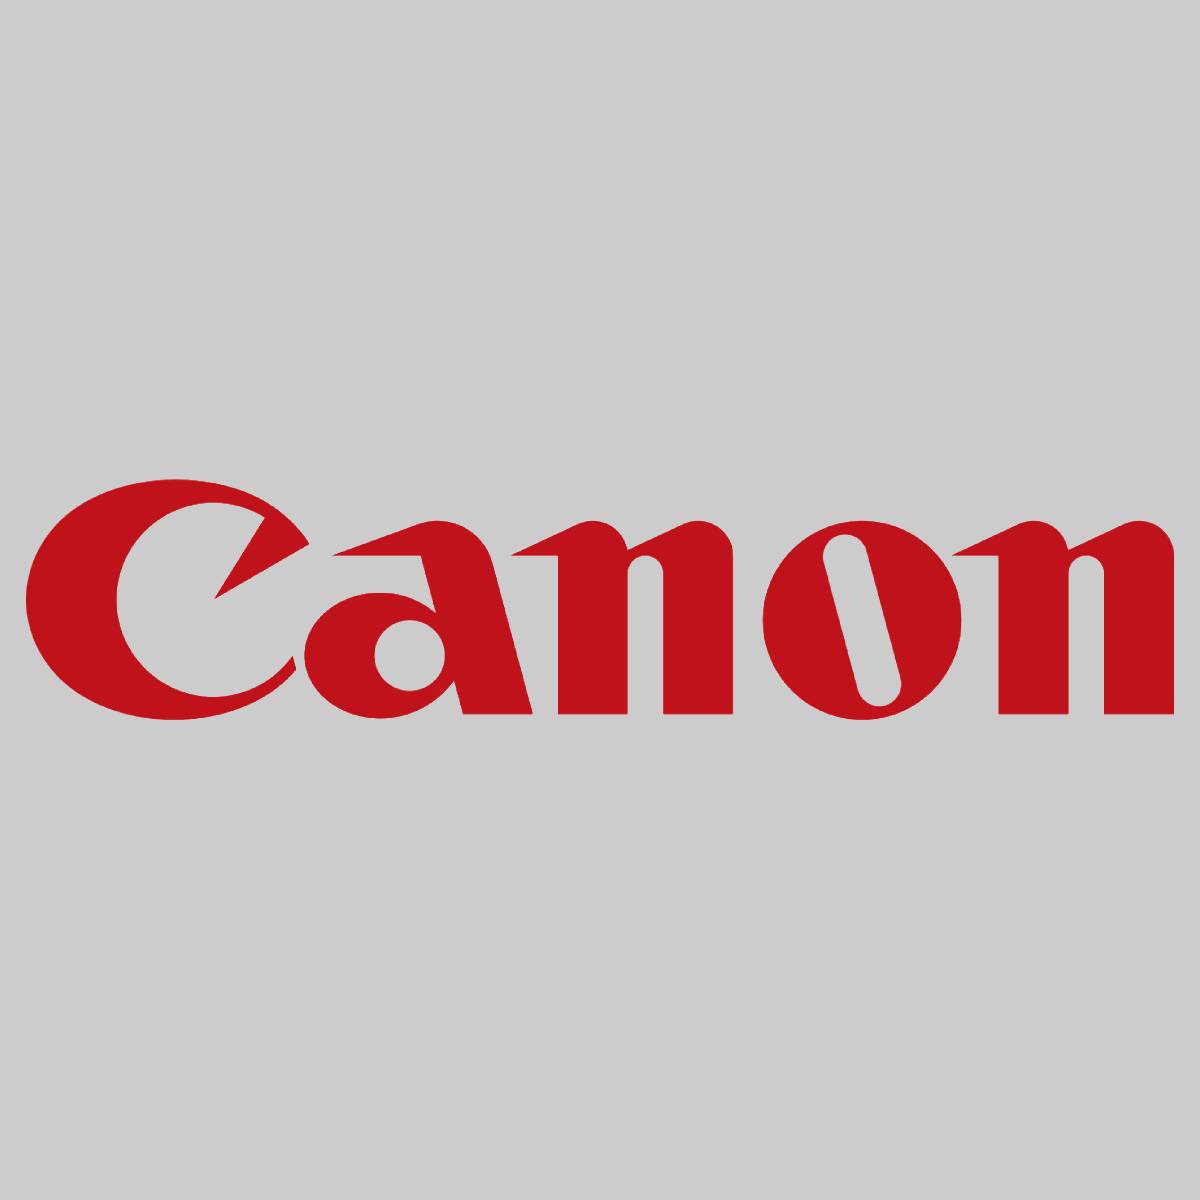 "Originele Canon C-EXV34 drumeenheid zwart 3786B003 imageRunner C 2100 IR-C 2100 S